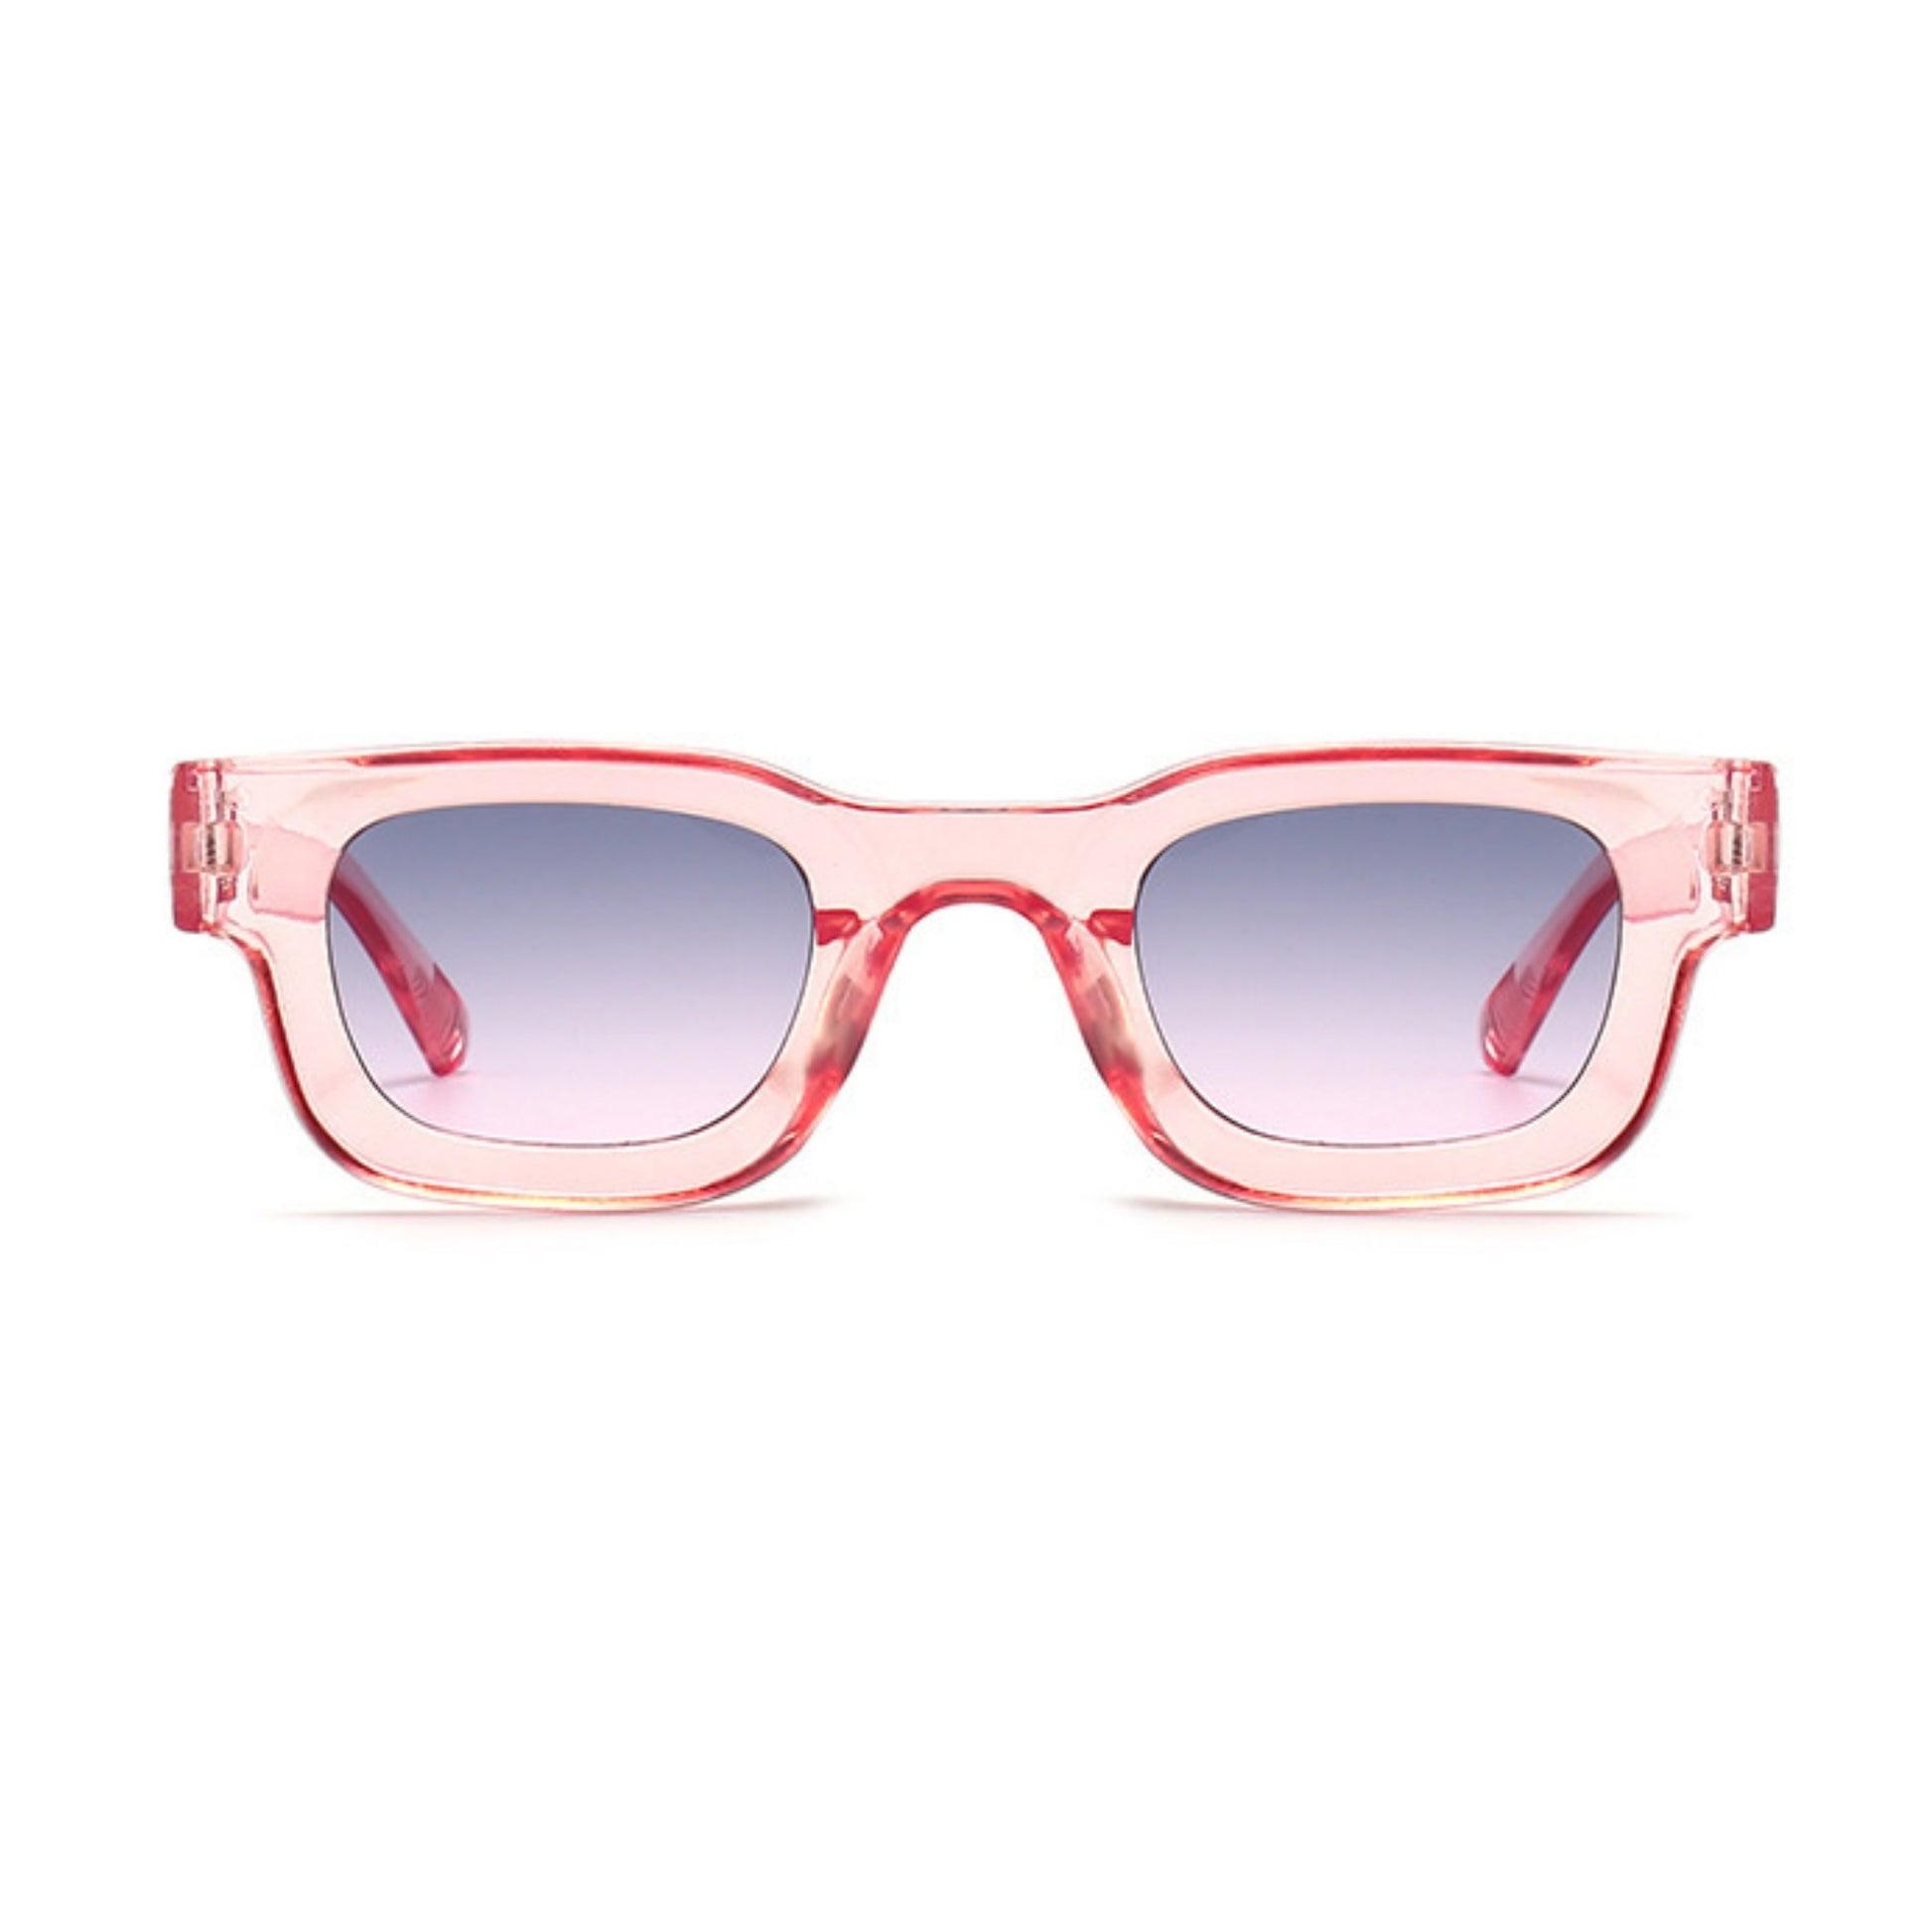 Τετράγωνα Γυαλιά ηλίου Taf από την Exposure Sunglasses με προστασία UV400 με ροζ σκελετό και μπλε φακό.